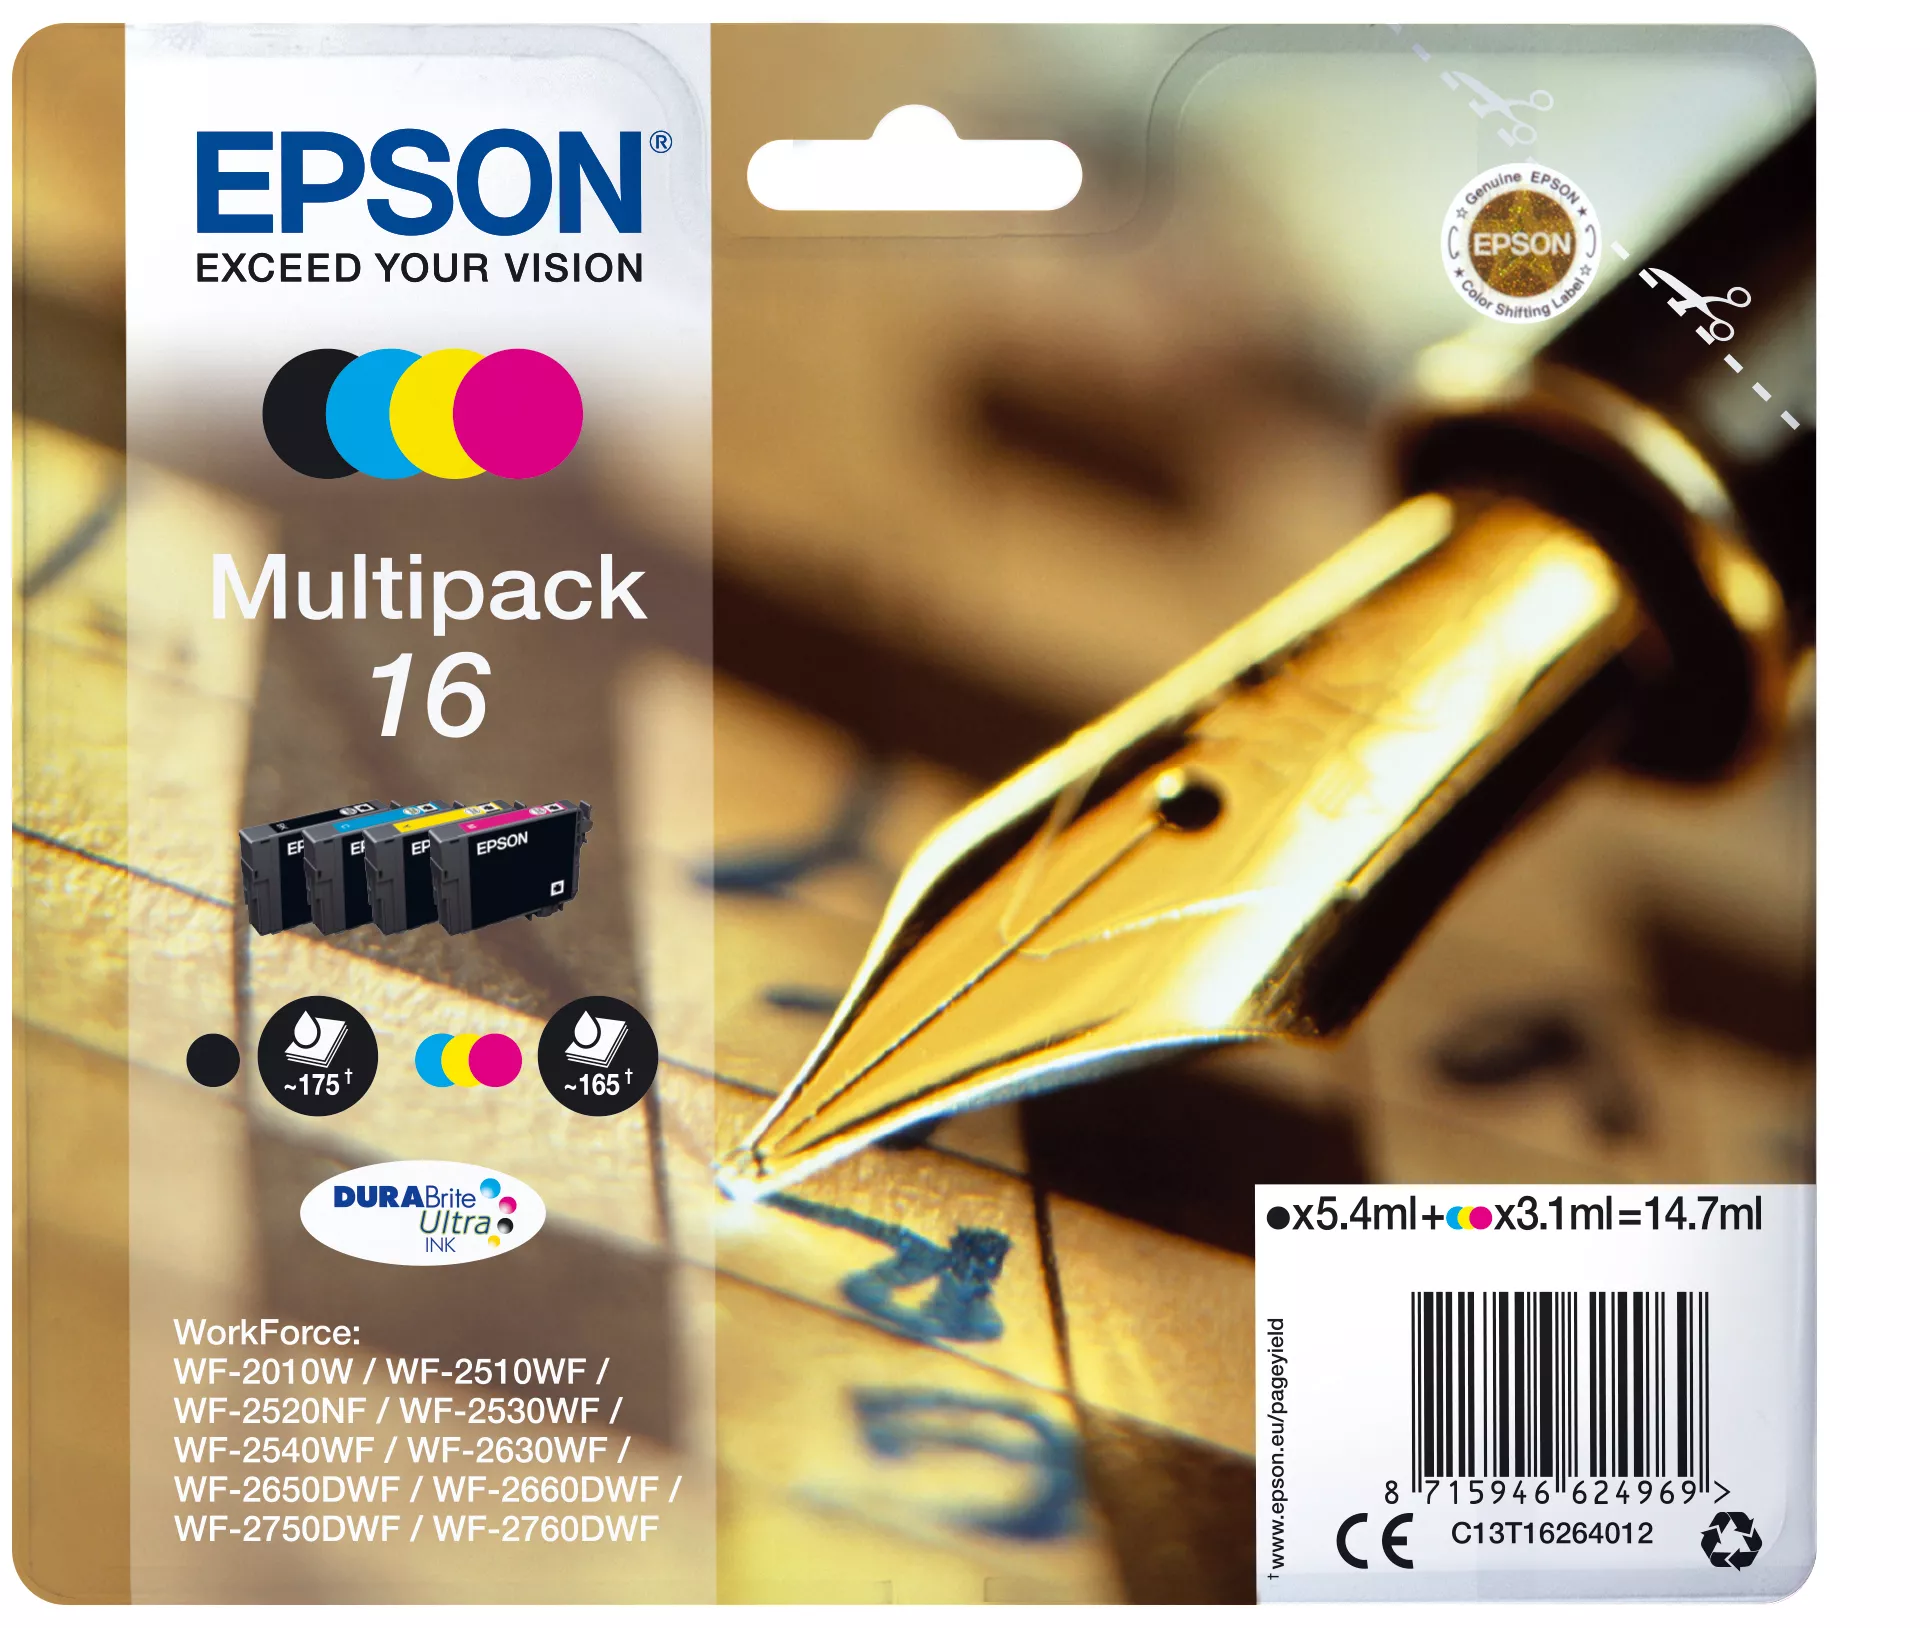 Achat EPSON 16 cartouche encre noir et tricolore capacité standard sur hello RSE